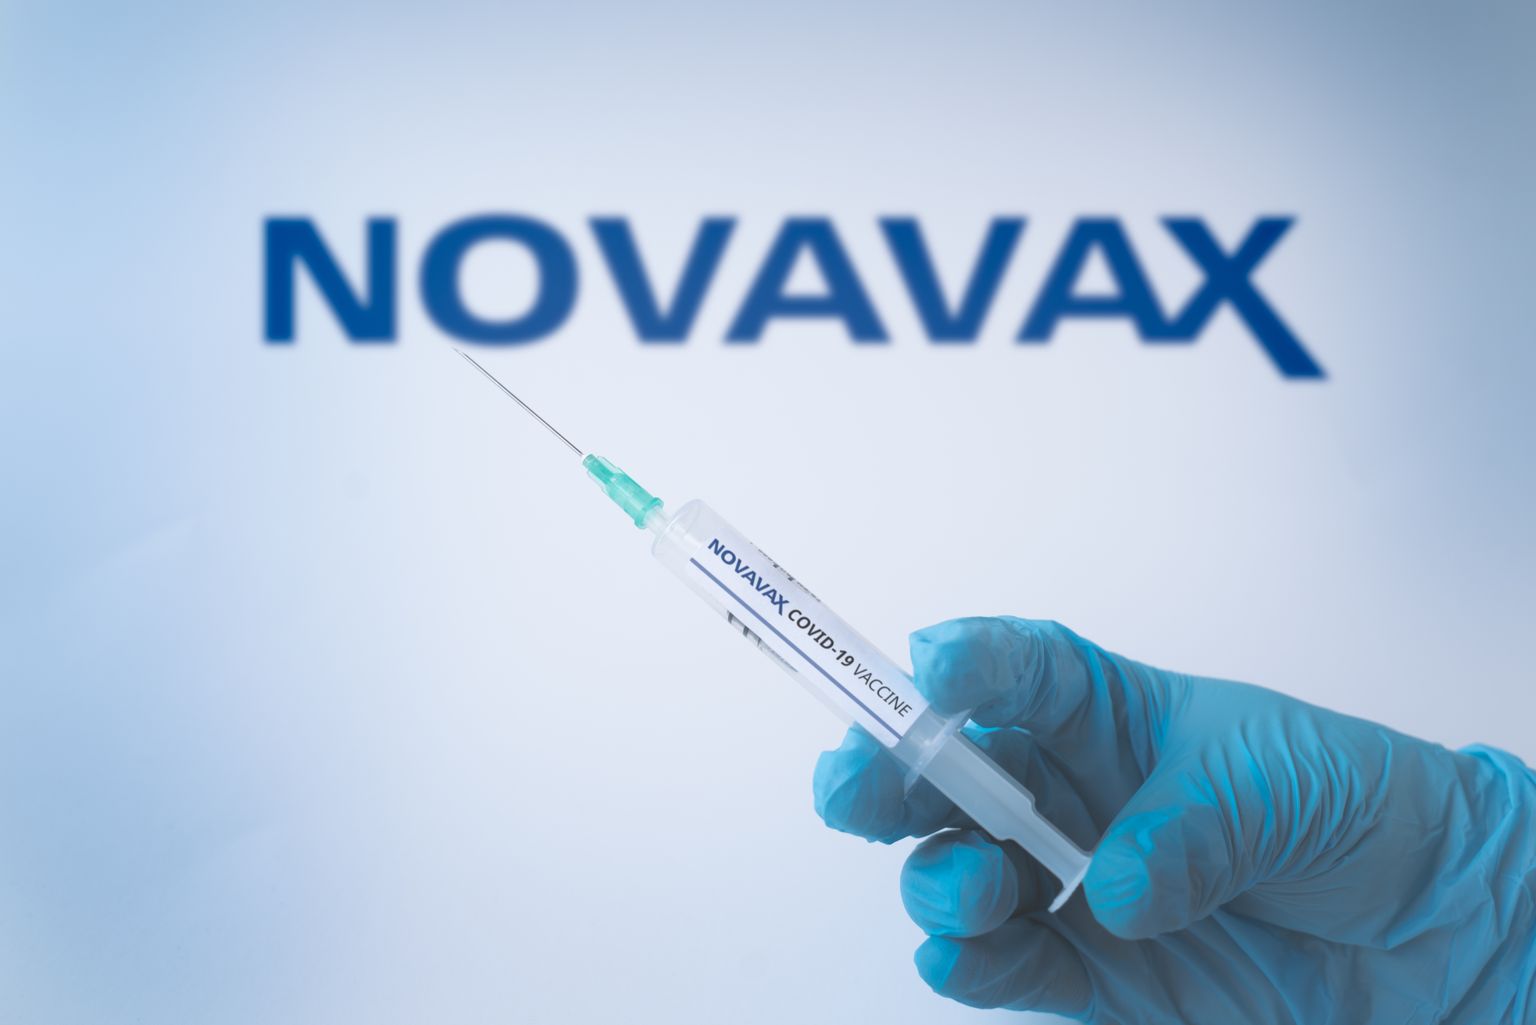 Euroopa Liidu ühises vaktsiiniportfellis on kokku kaheksa vaktsiinitootja (Pfizer/BioNTech, Moderna, AstraZeneca, Janssen Pharmaceutica NV ja CureVac, Sanofi, Novavax, Valneva) vaktsiinid.